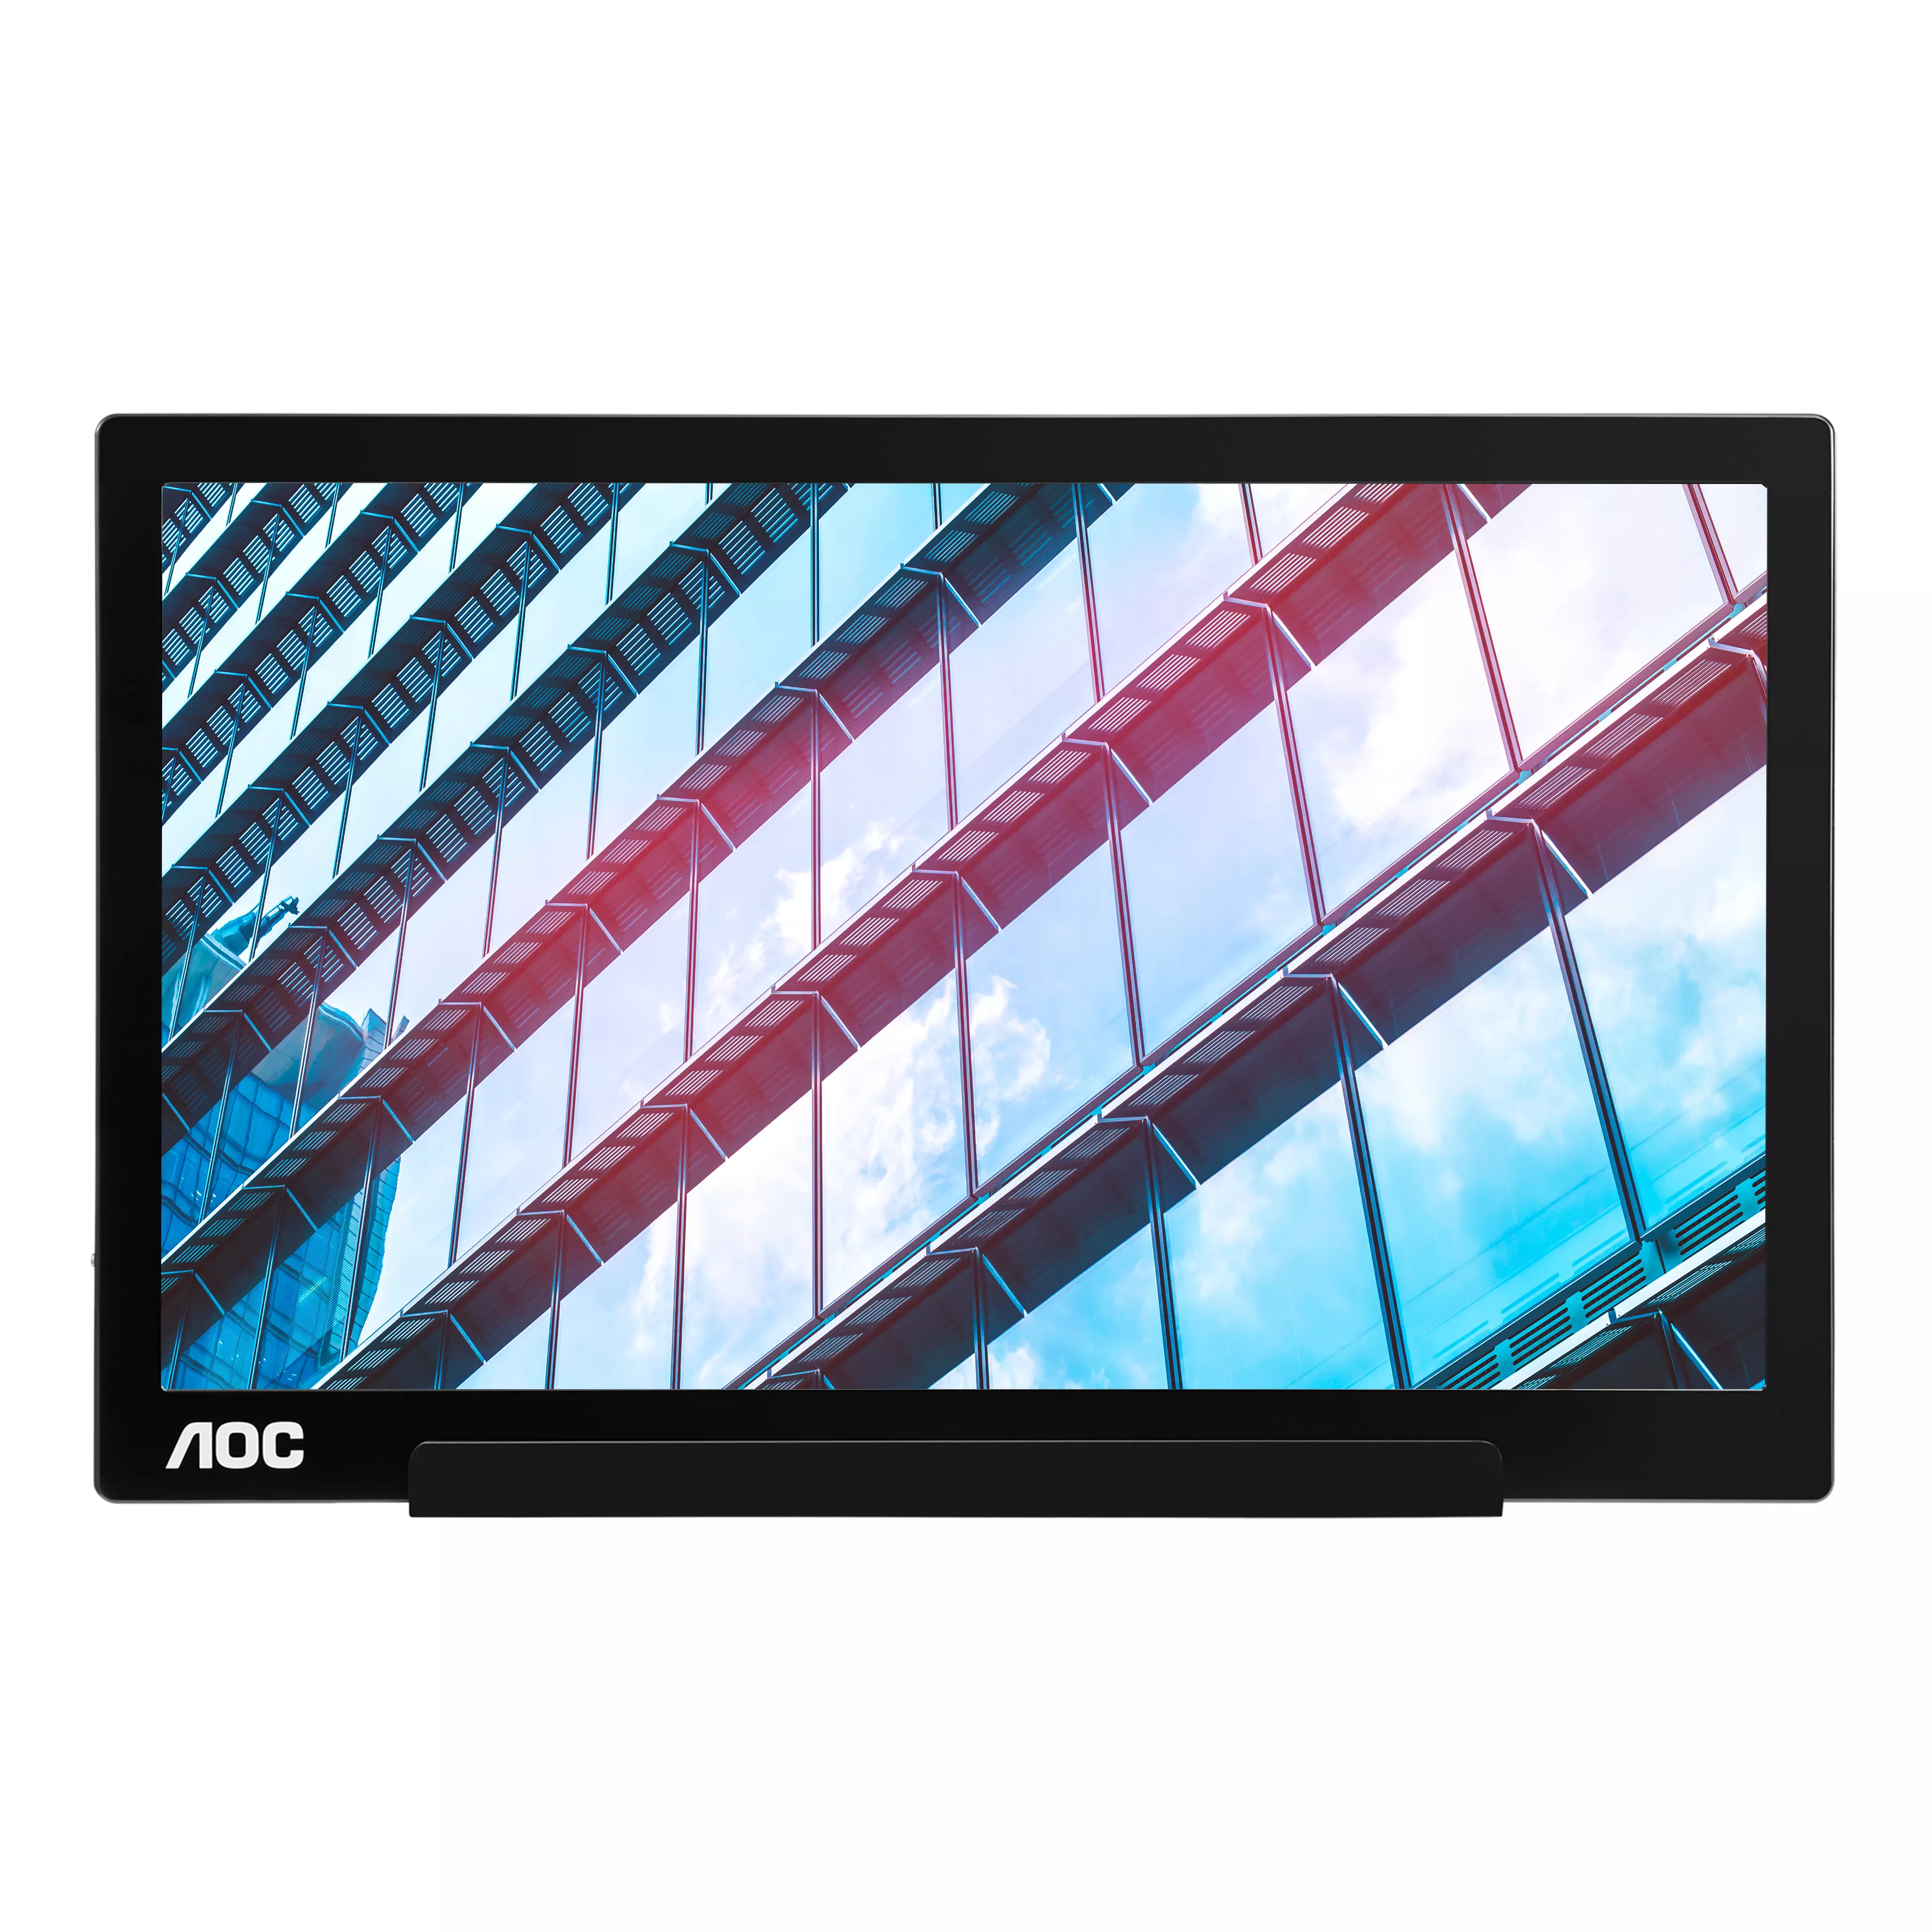 Achat AOC I1601P 15.6p FHD IPS 60Hz 5ms 220cd/m2 sur hello RSE - visuel 3